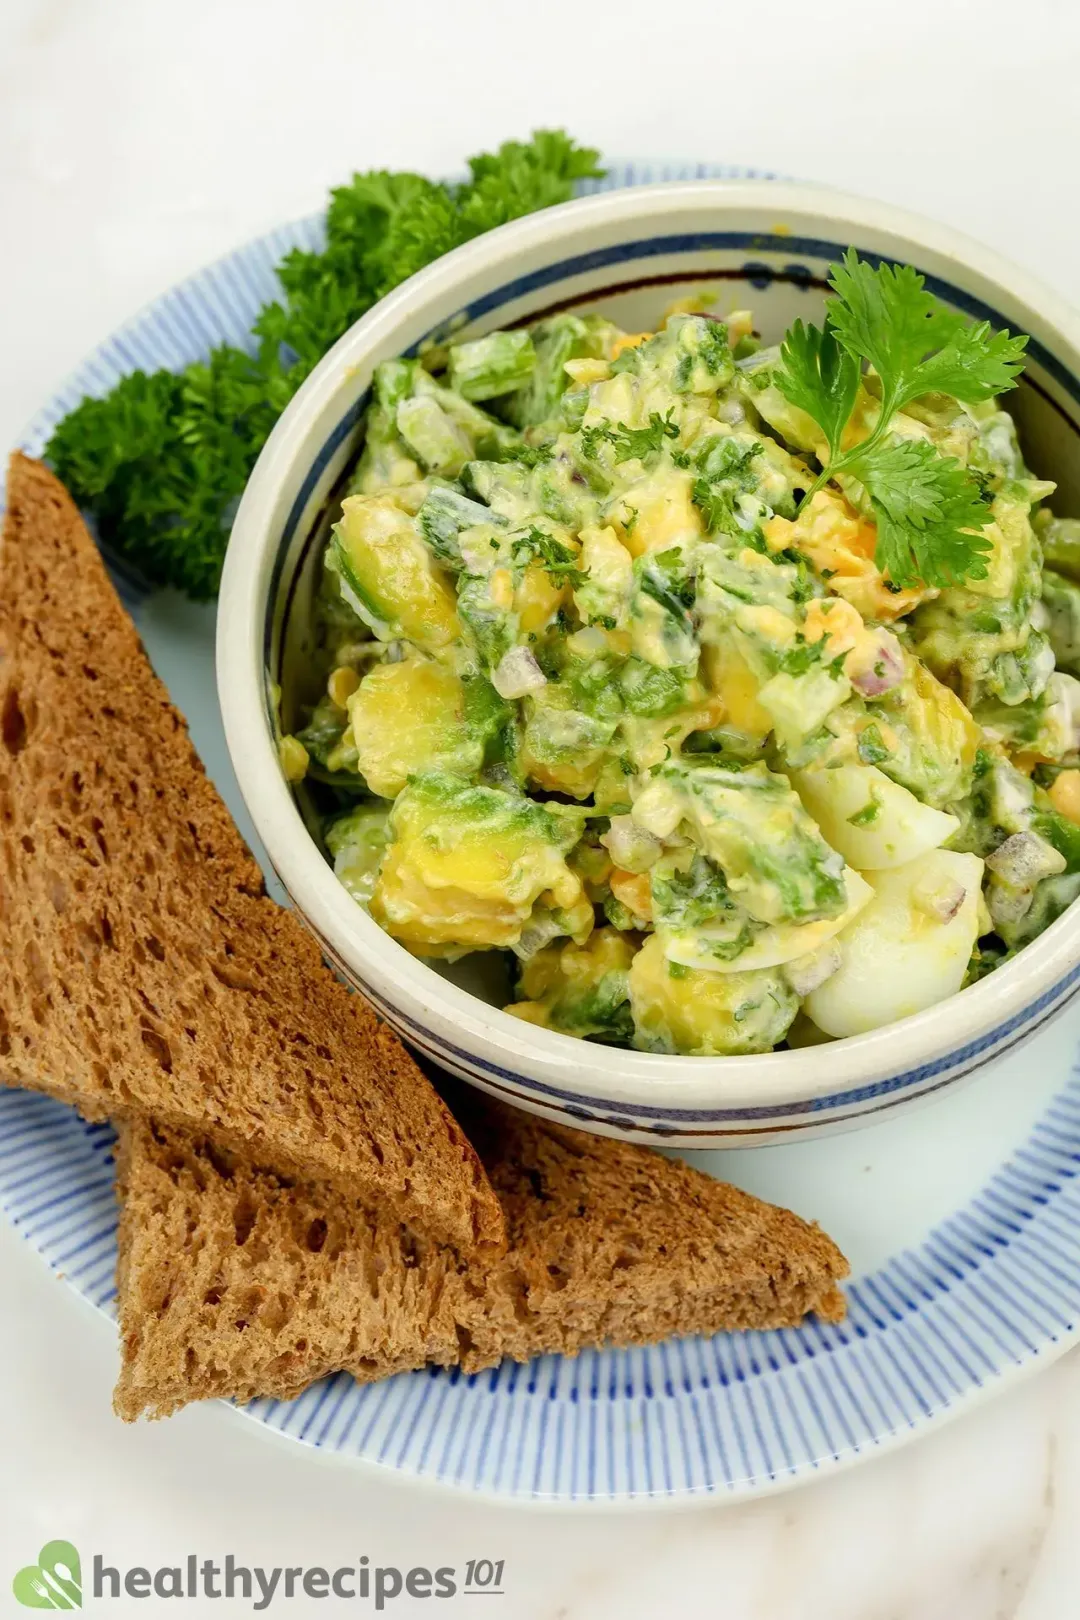 Is Avocado Egg Salad Healthy